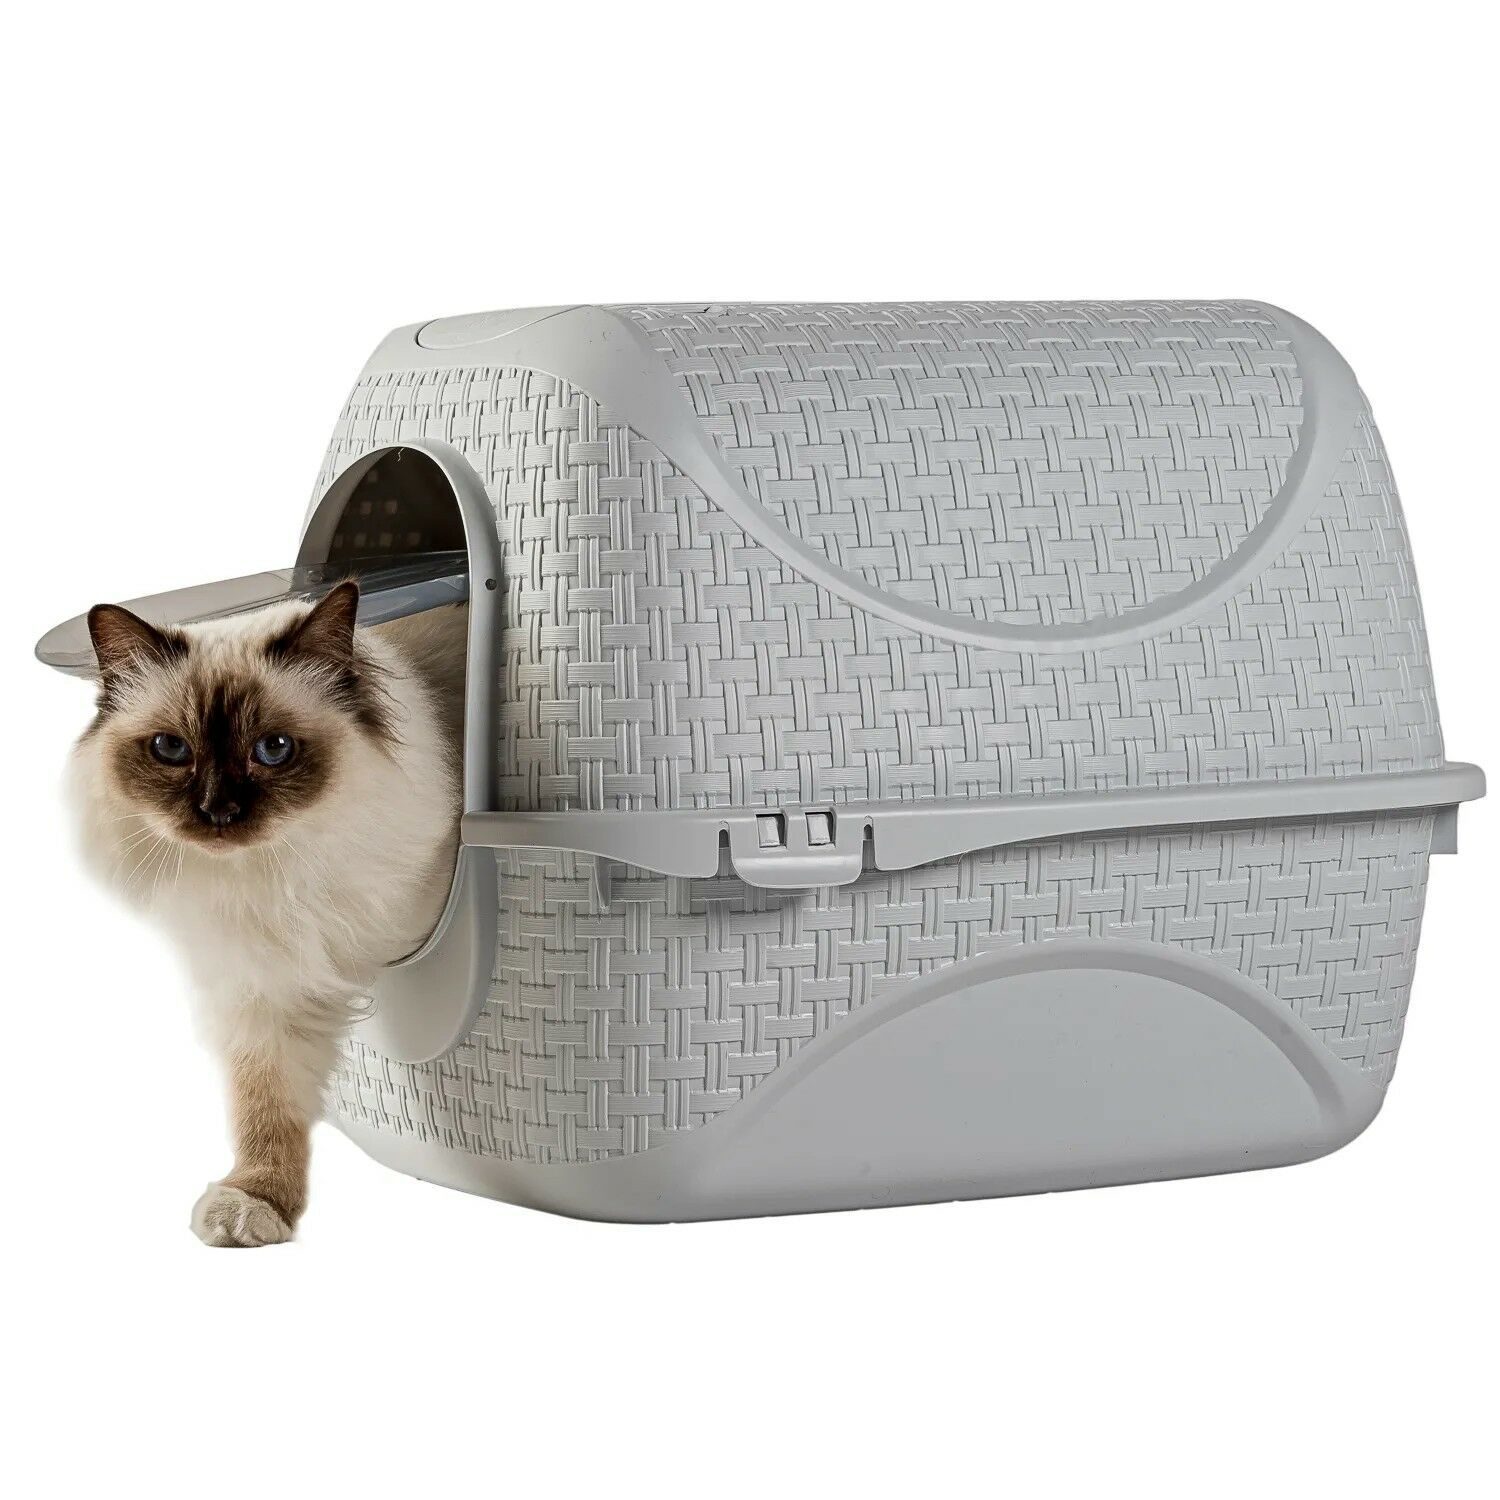 bama pet био-туалет для кошек prive 42х50,5х39,6h см, светло-серый